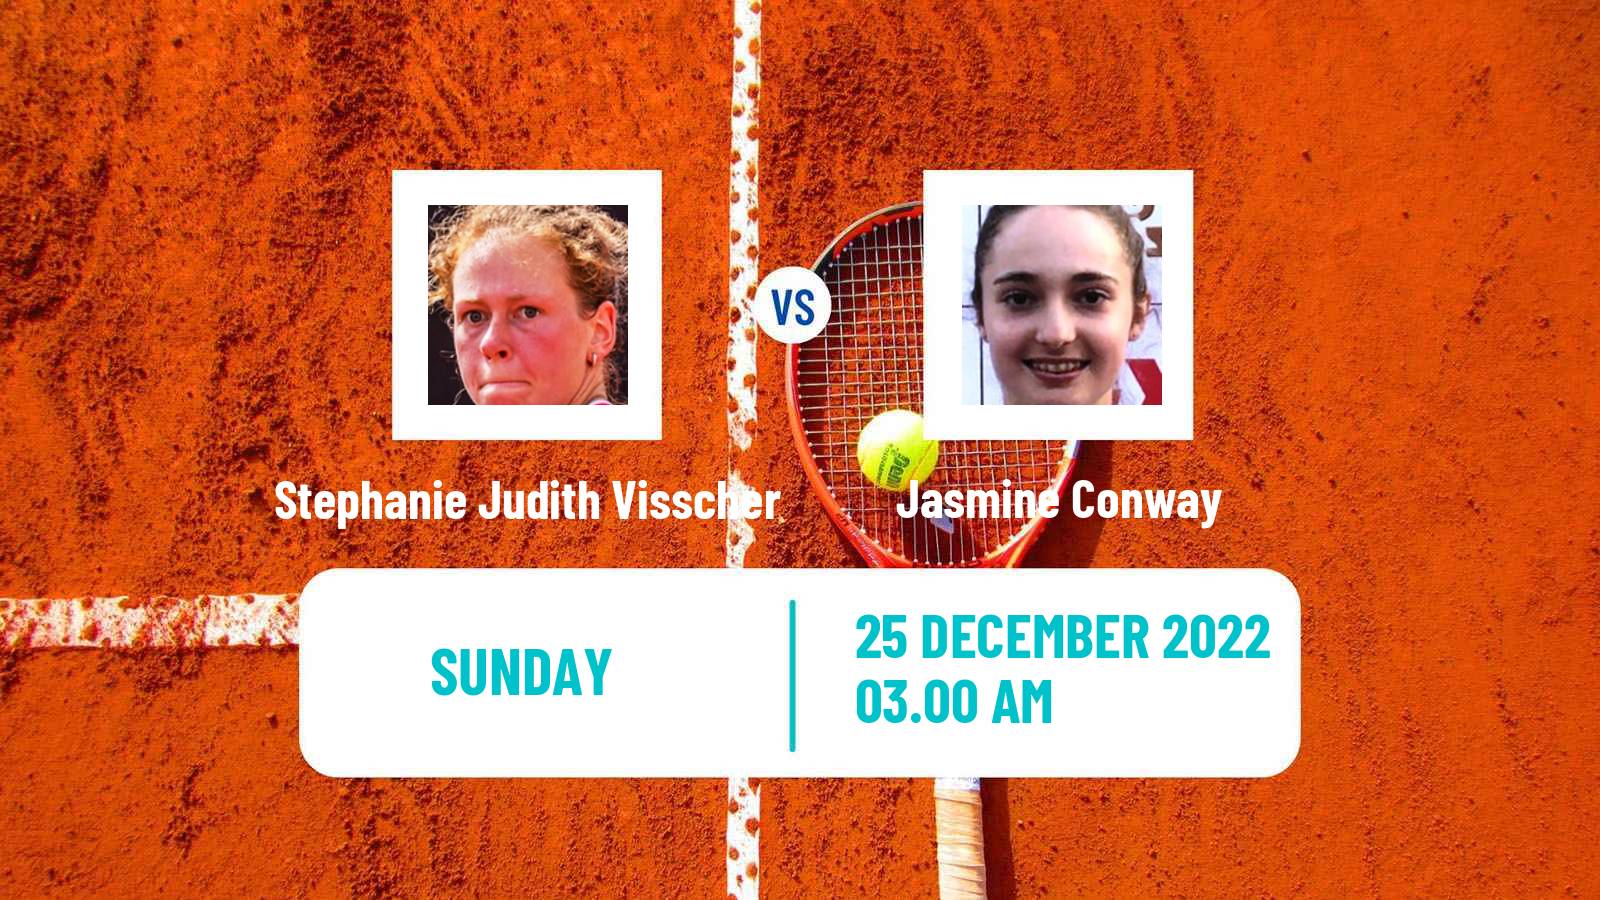 Tennis ITF Tournaments Stephanie Judith Visscher - Jasmine Conway